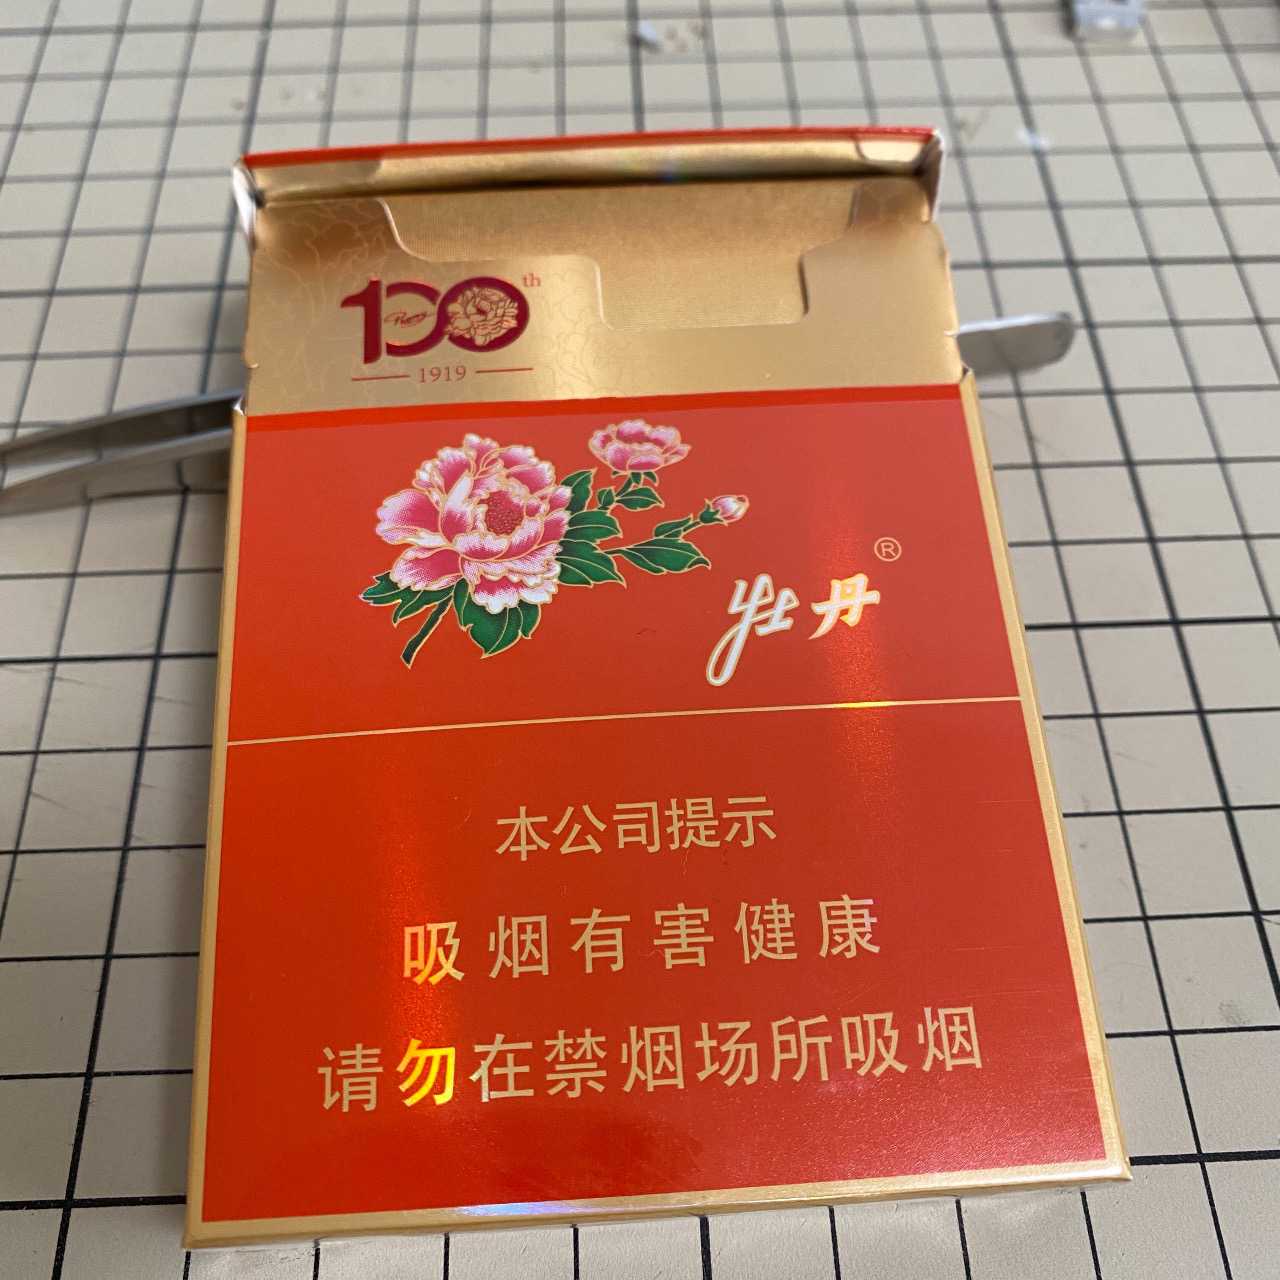 南京牌香烟图片_香烟南京图片购物烟草南京市